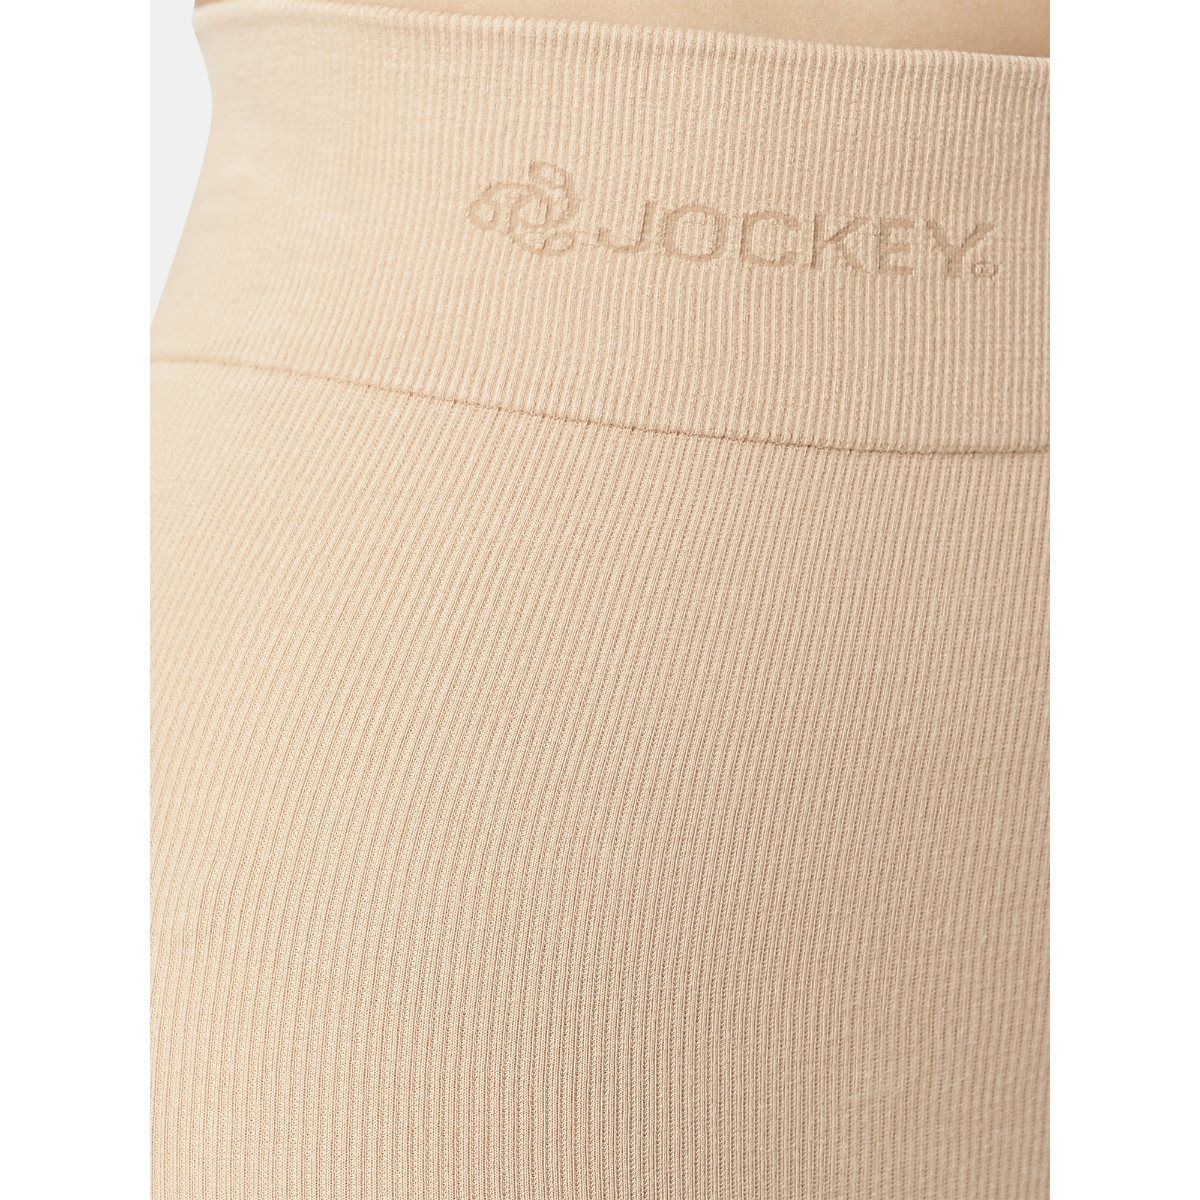 Jockey Trackpants  Buy Jockey Mv11 Men Microfiber Trackpant With Zipper  Pockets  Stay Fresh Treatmentgrey Online  Nykaa Fashion